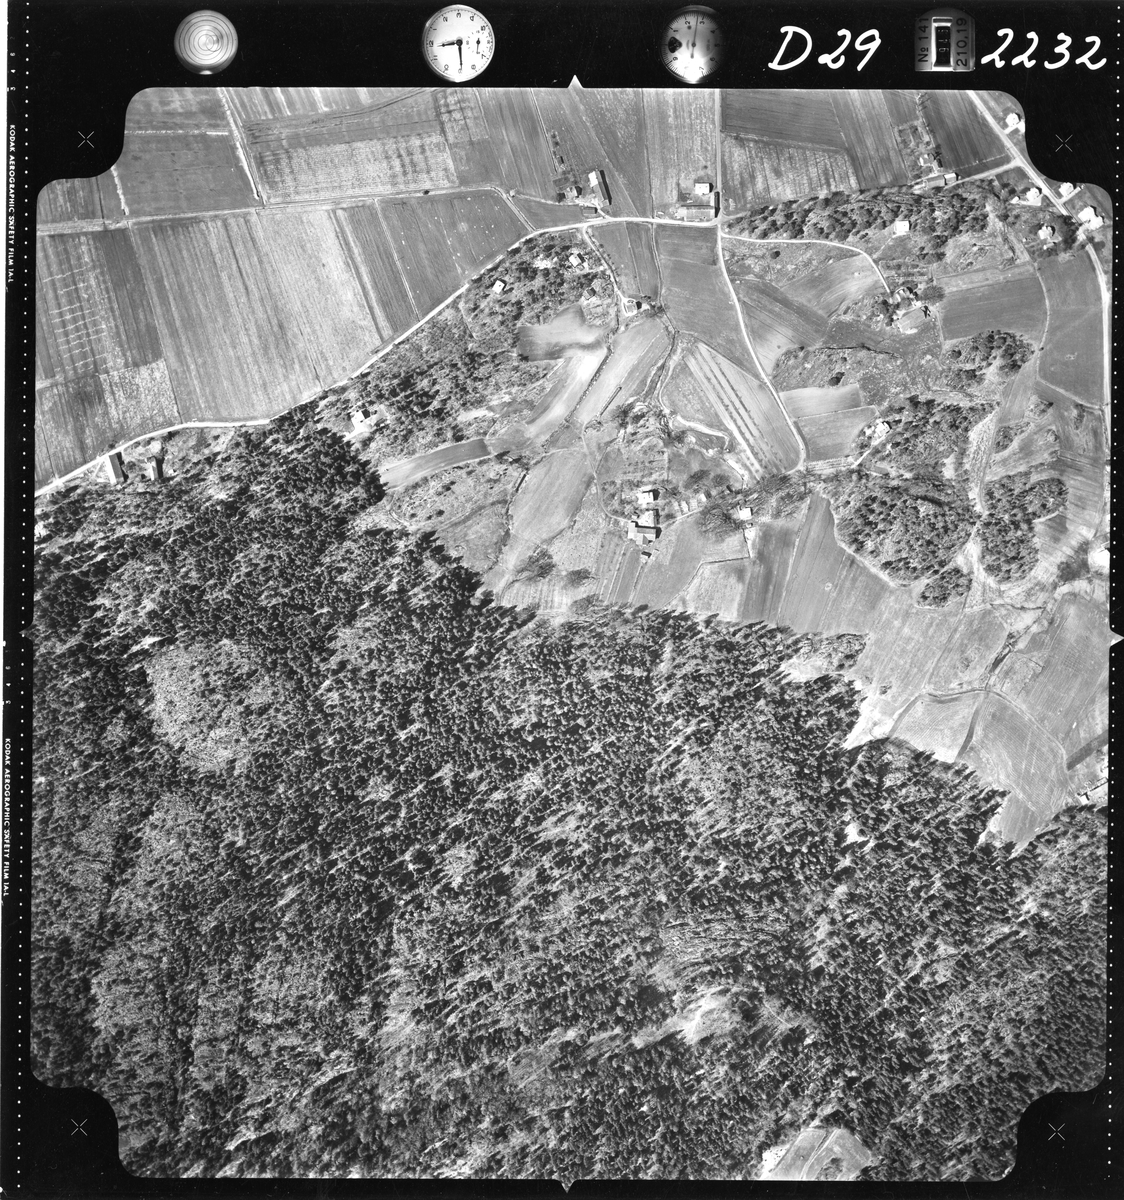 Flyfotoarkiv fra Fjellanger Widerøe AS, fra Porsgrunn Kommune, Valleråsen- Vallermyrene. Fotografert 16/05-1962. Oppdrag nr 2232, D29